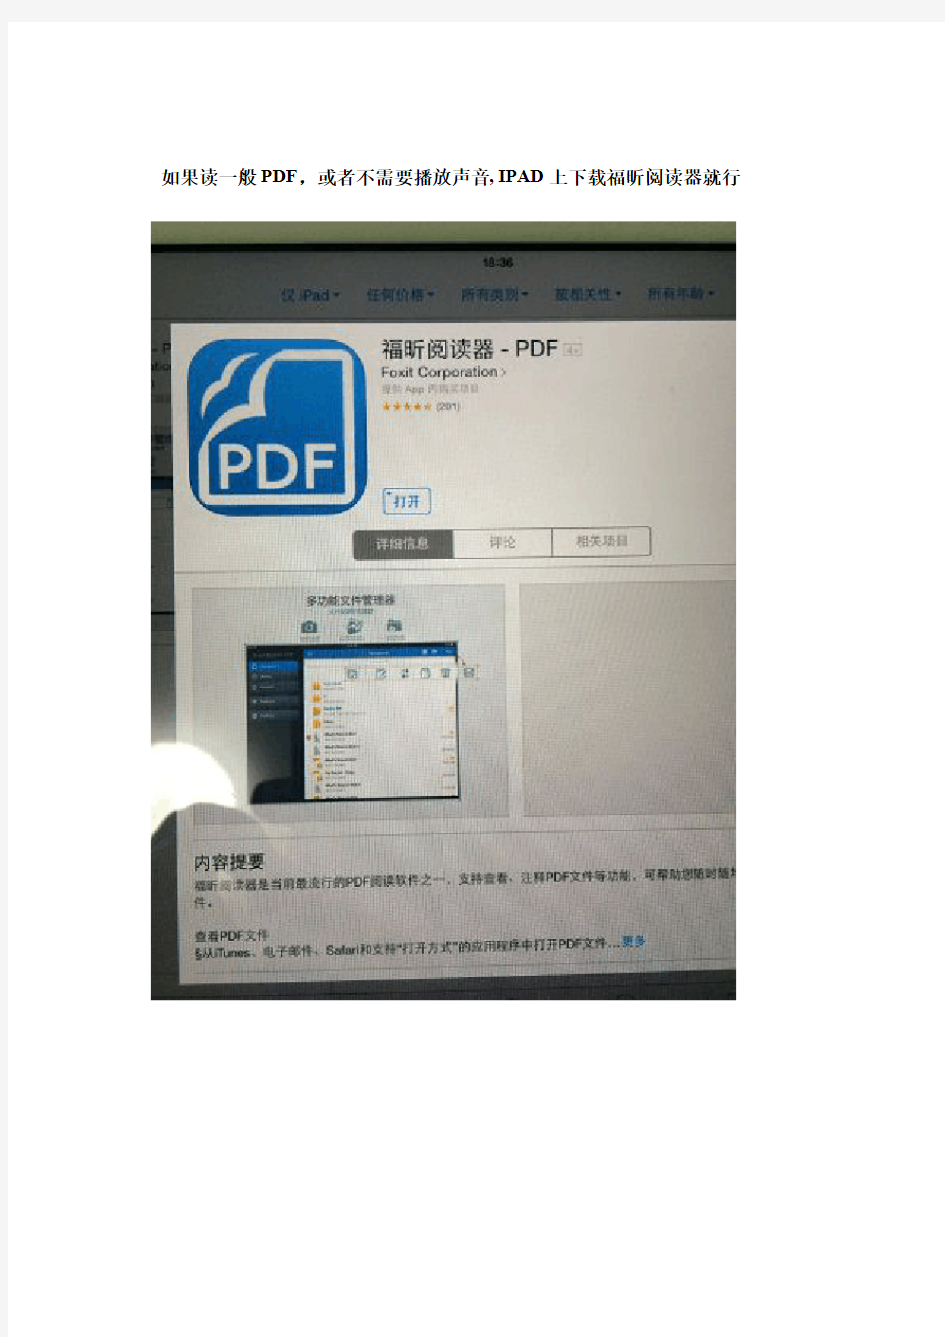 有声读物PDF使用指南(IPAD, 安卓,Windows)